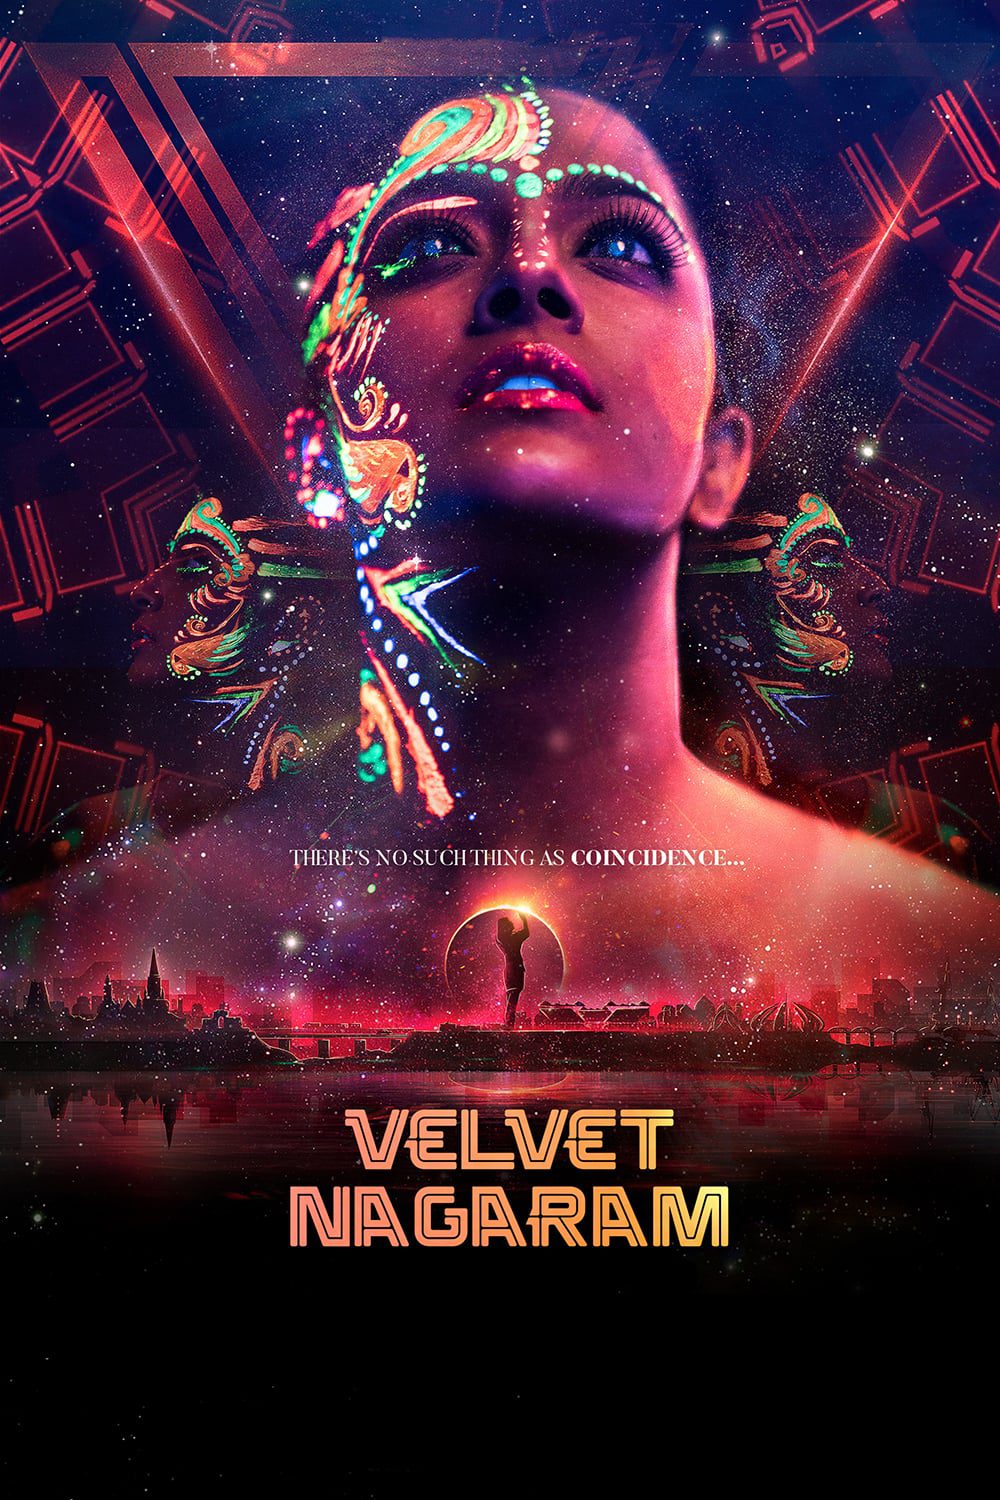 Poster for the movie "Velvet Nagaram"